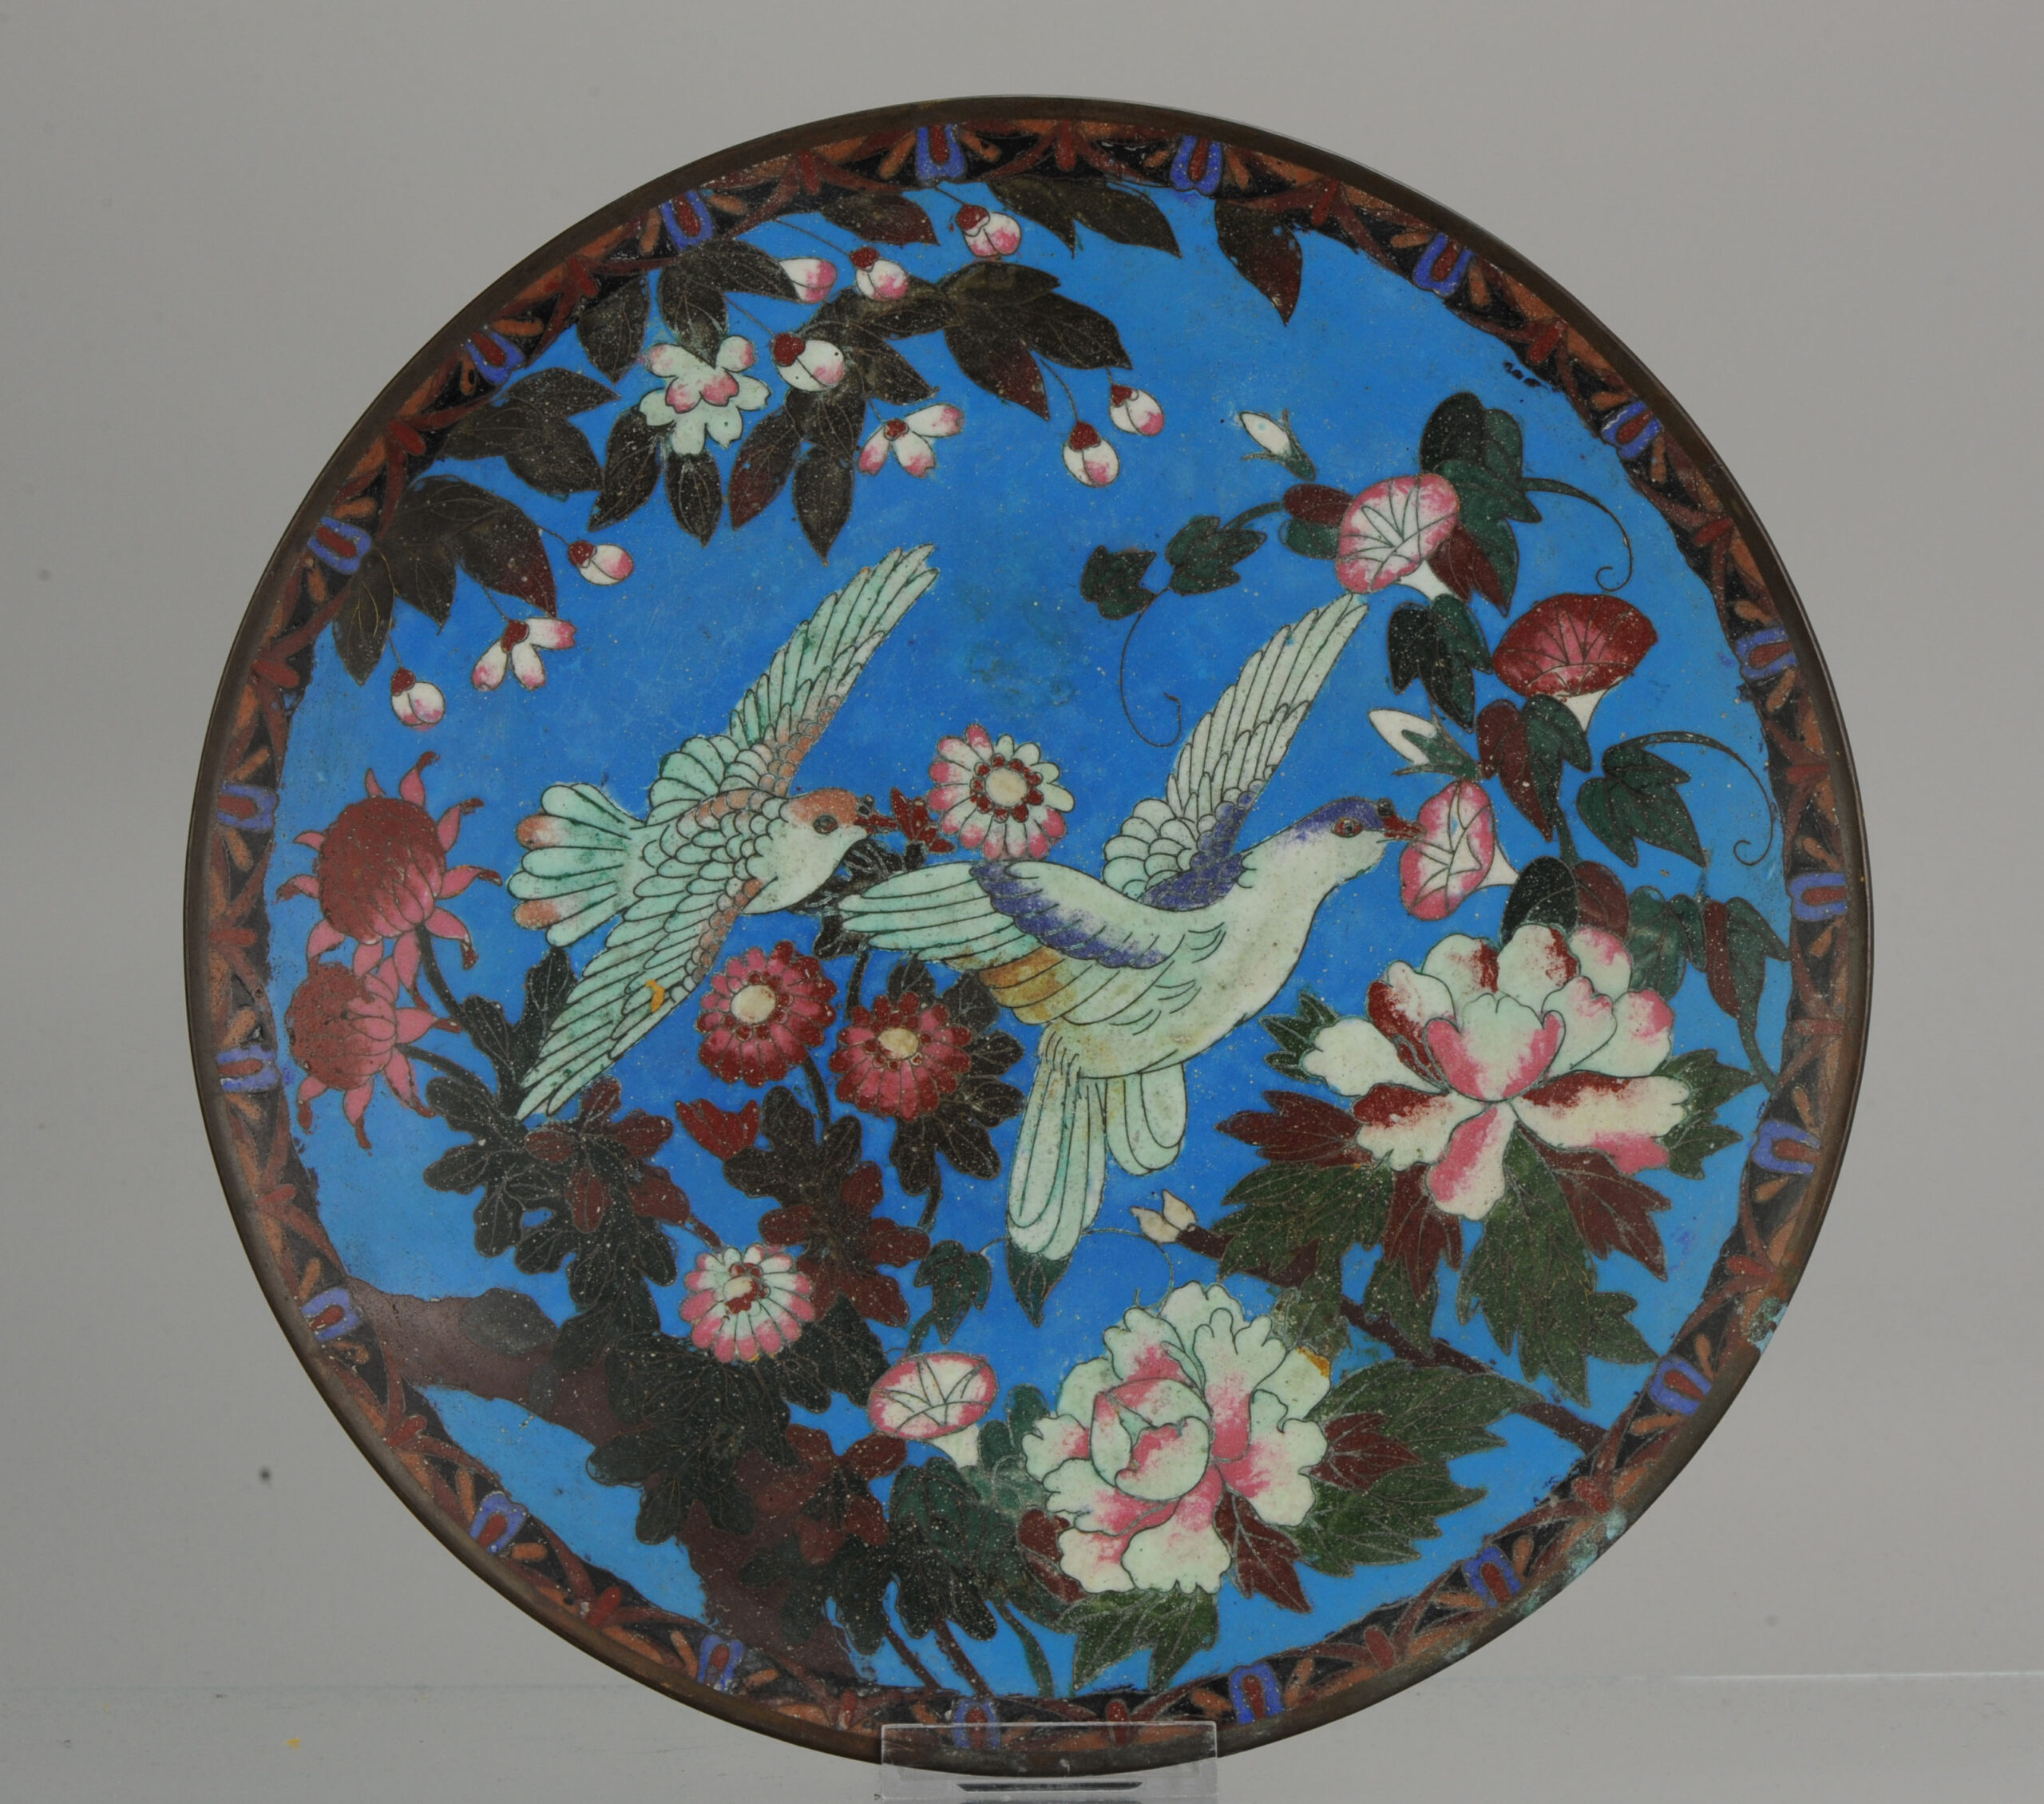 Top and Large Antique Bronze / Copper Cloisonné Dish Plate Japan 19C Birds